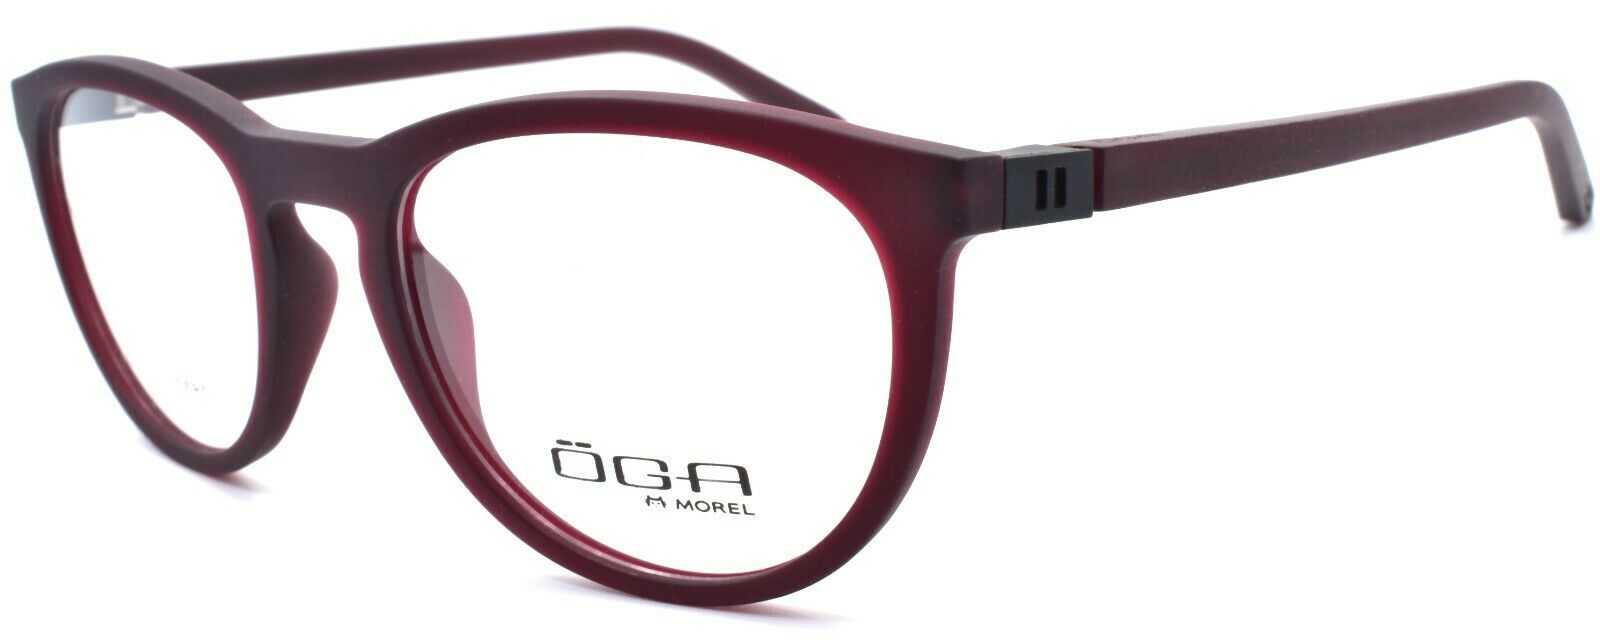 1-OGA by Morel 82040 RN022 Eyeglasses Frames 51-20-140 Red-3604770897678-IKSpecs